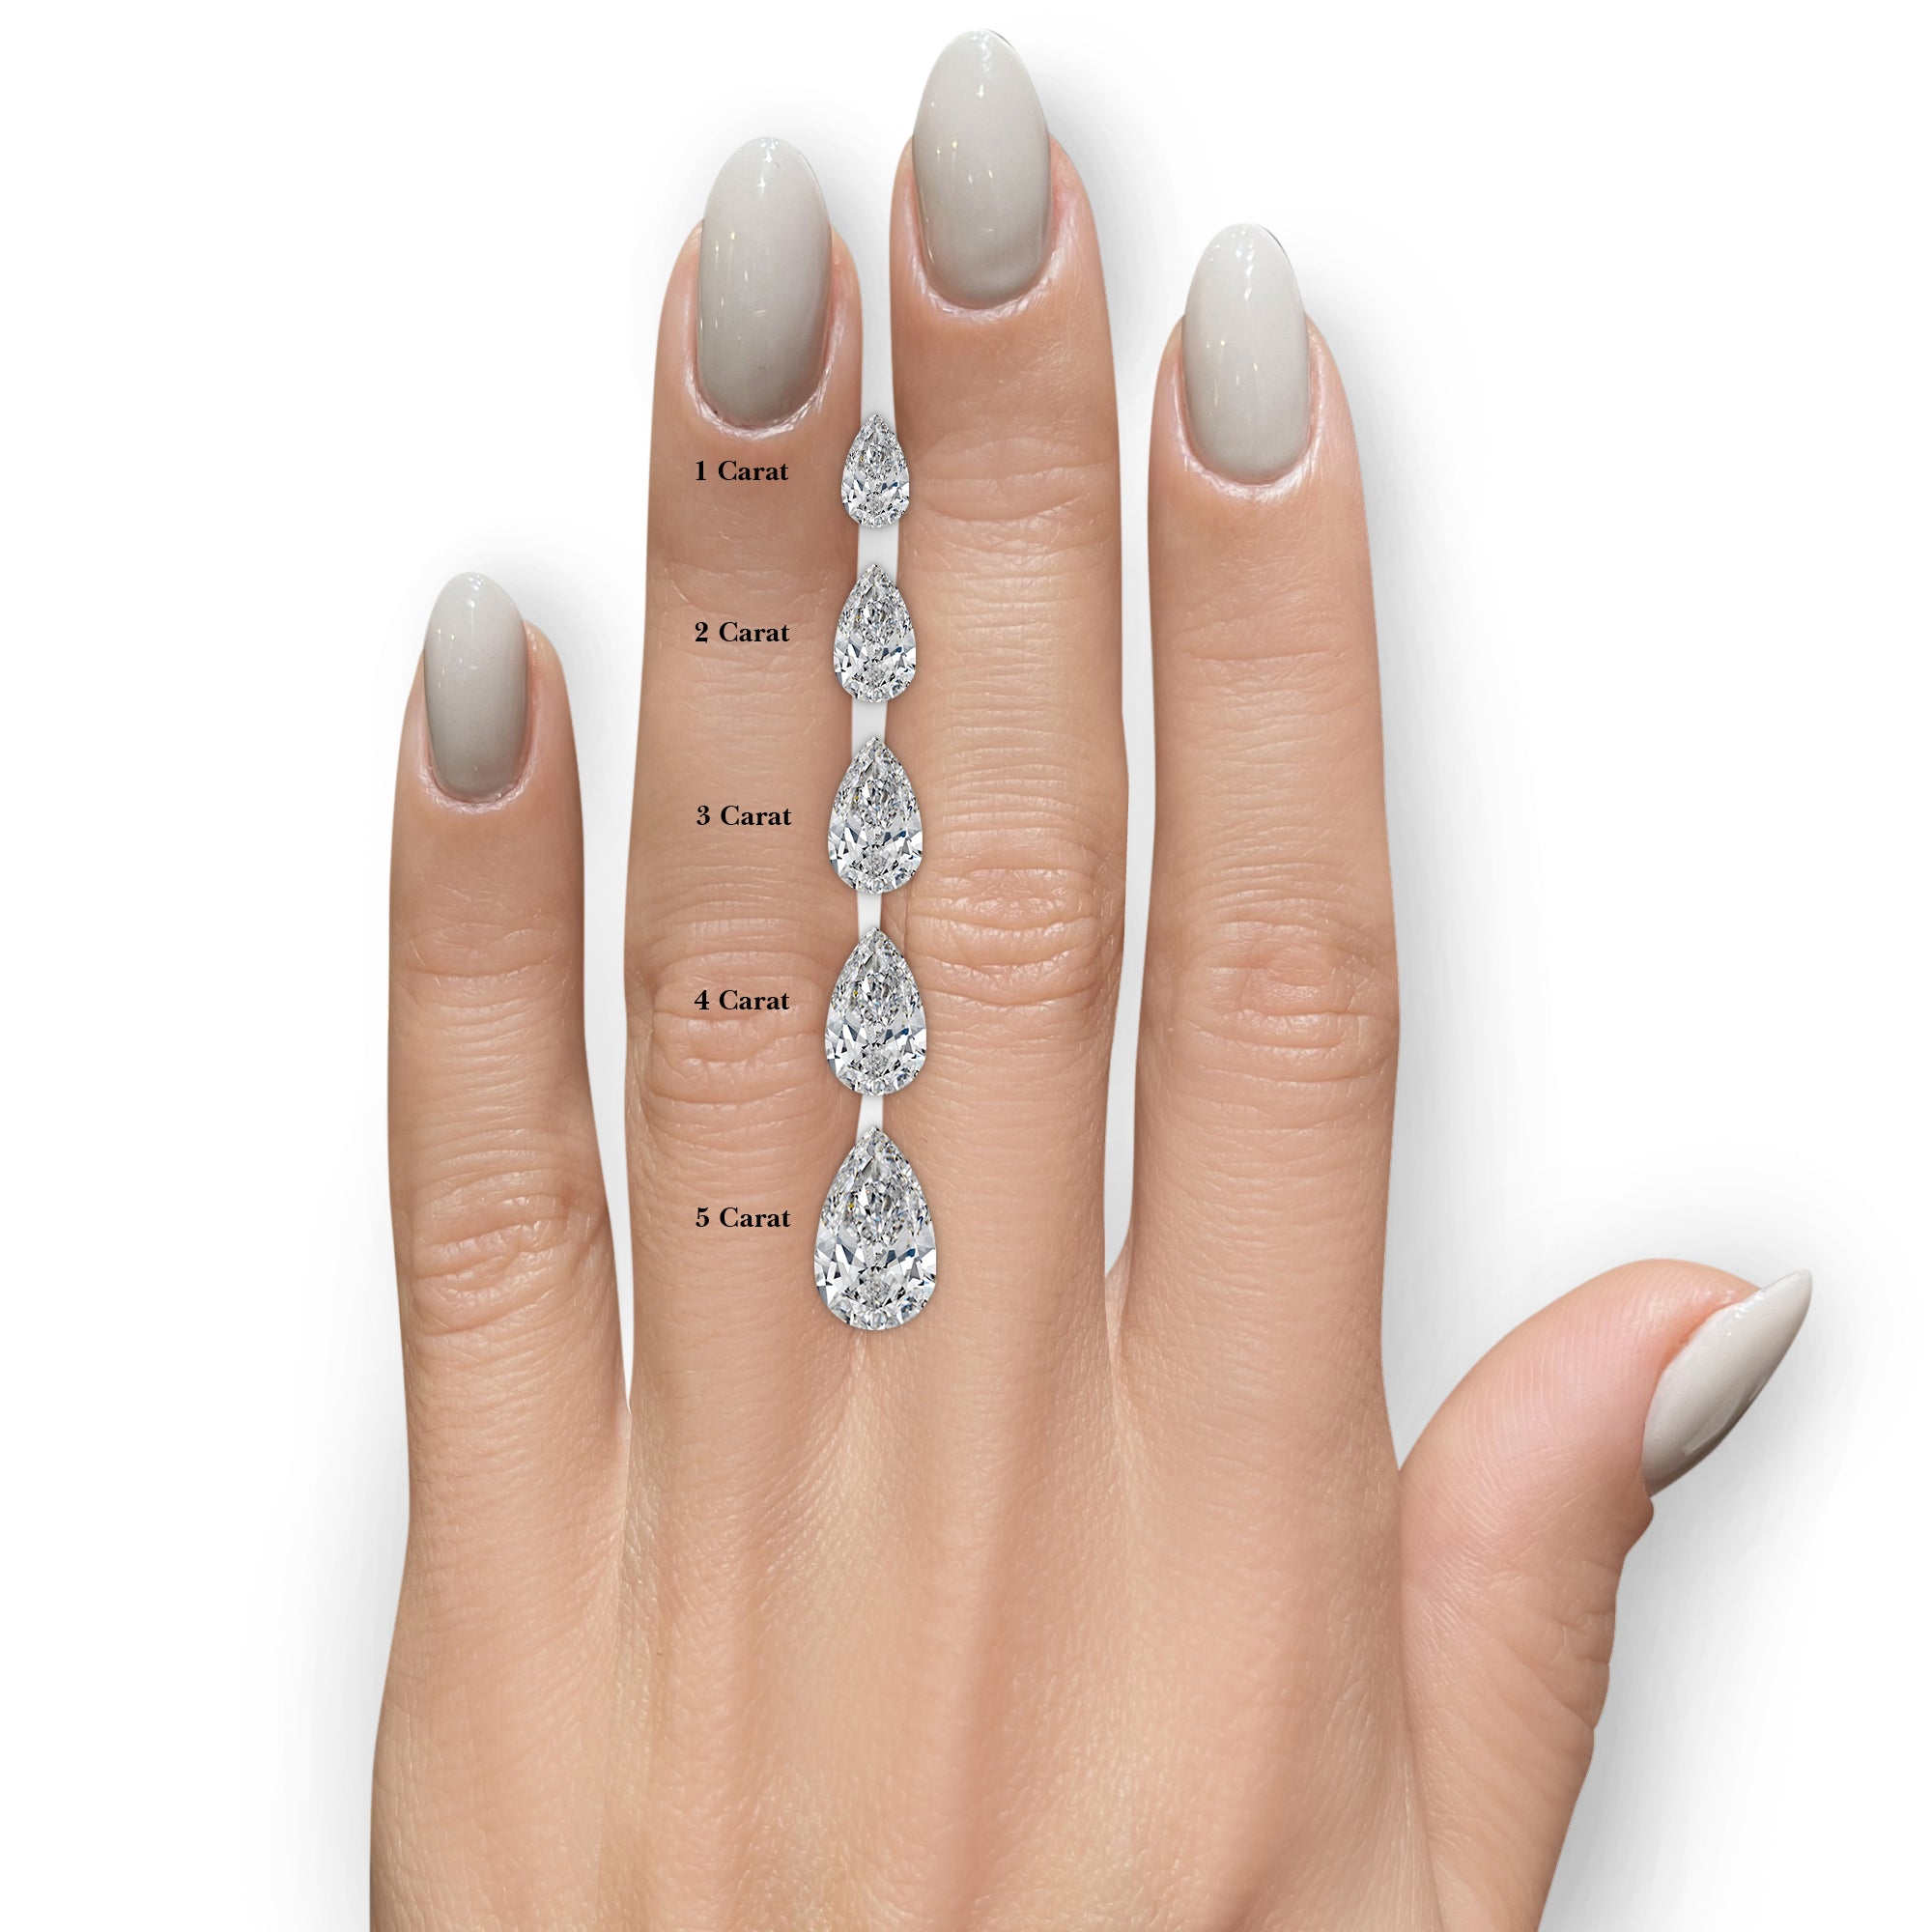 Mabel Diamond Engagement Ring -14K White Gold